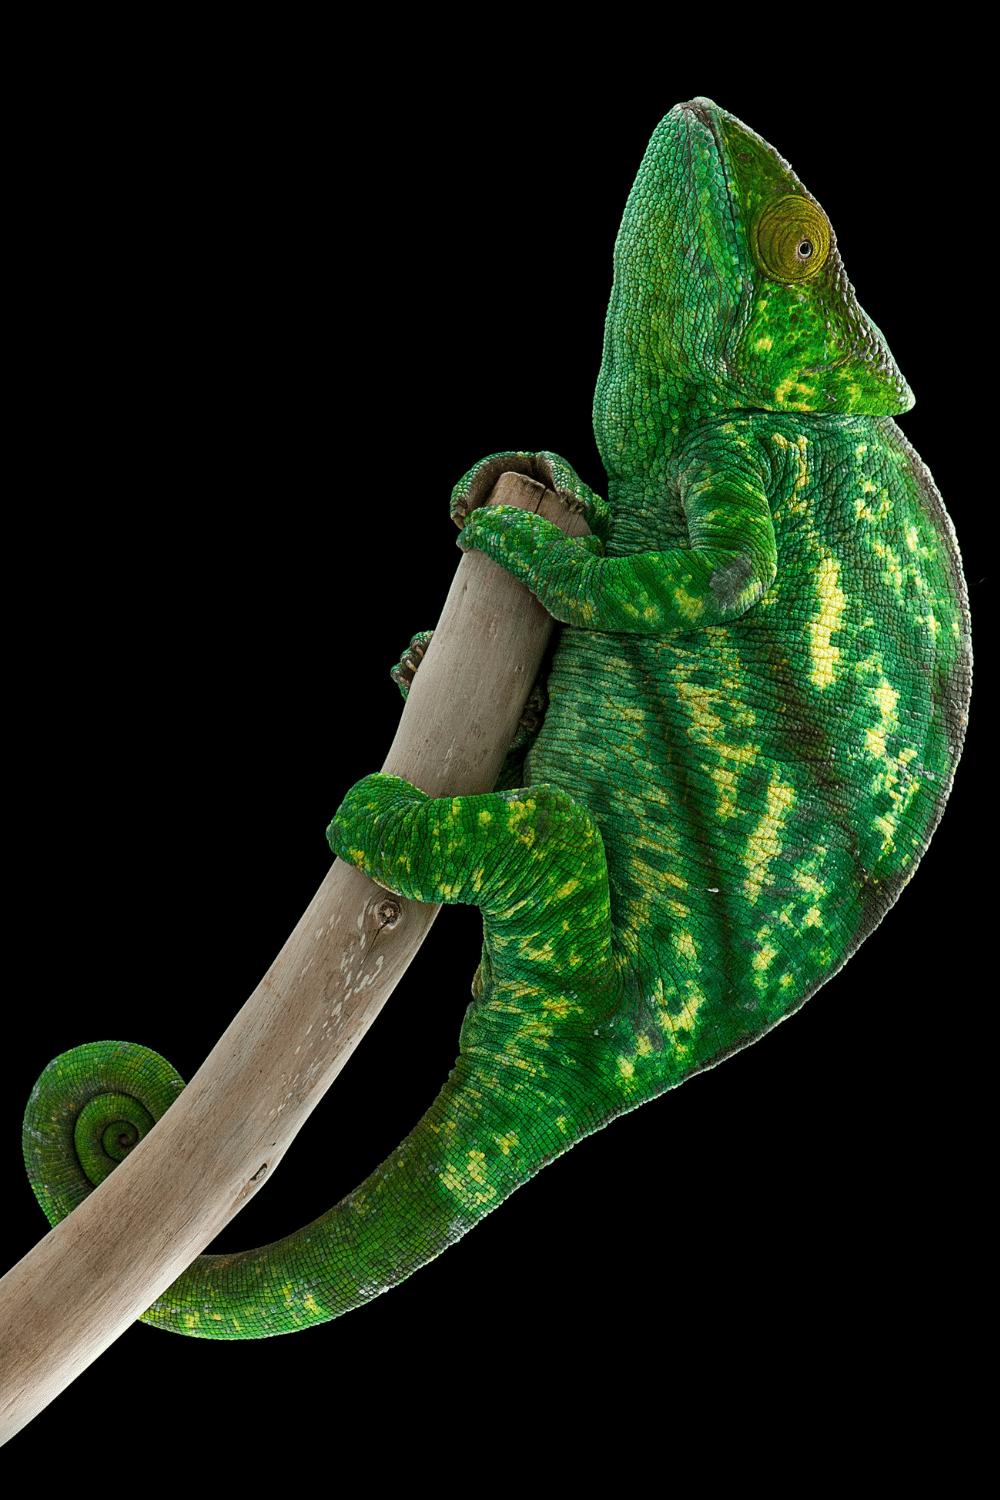 Juvenile Panther Chameleons